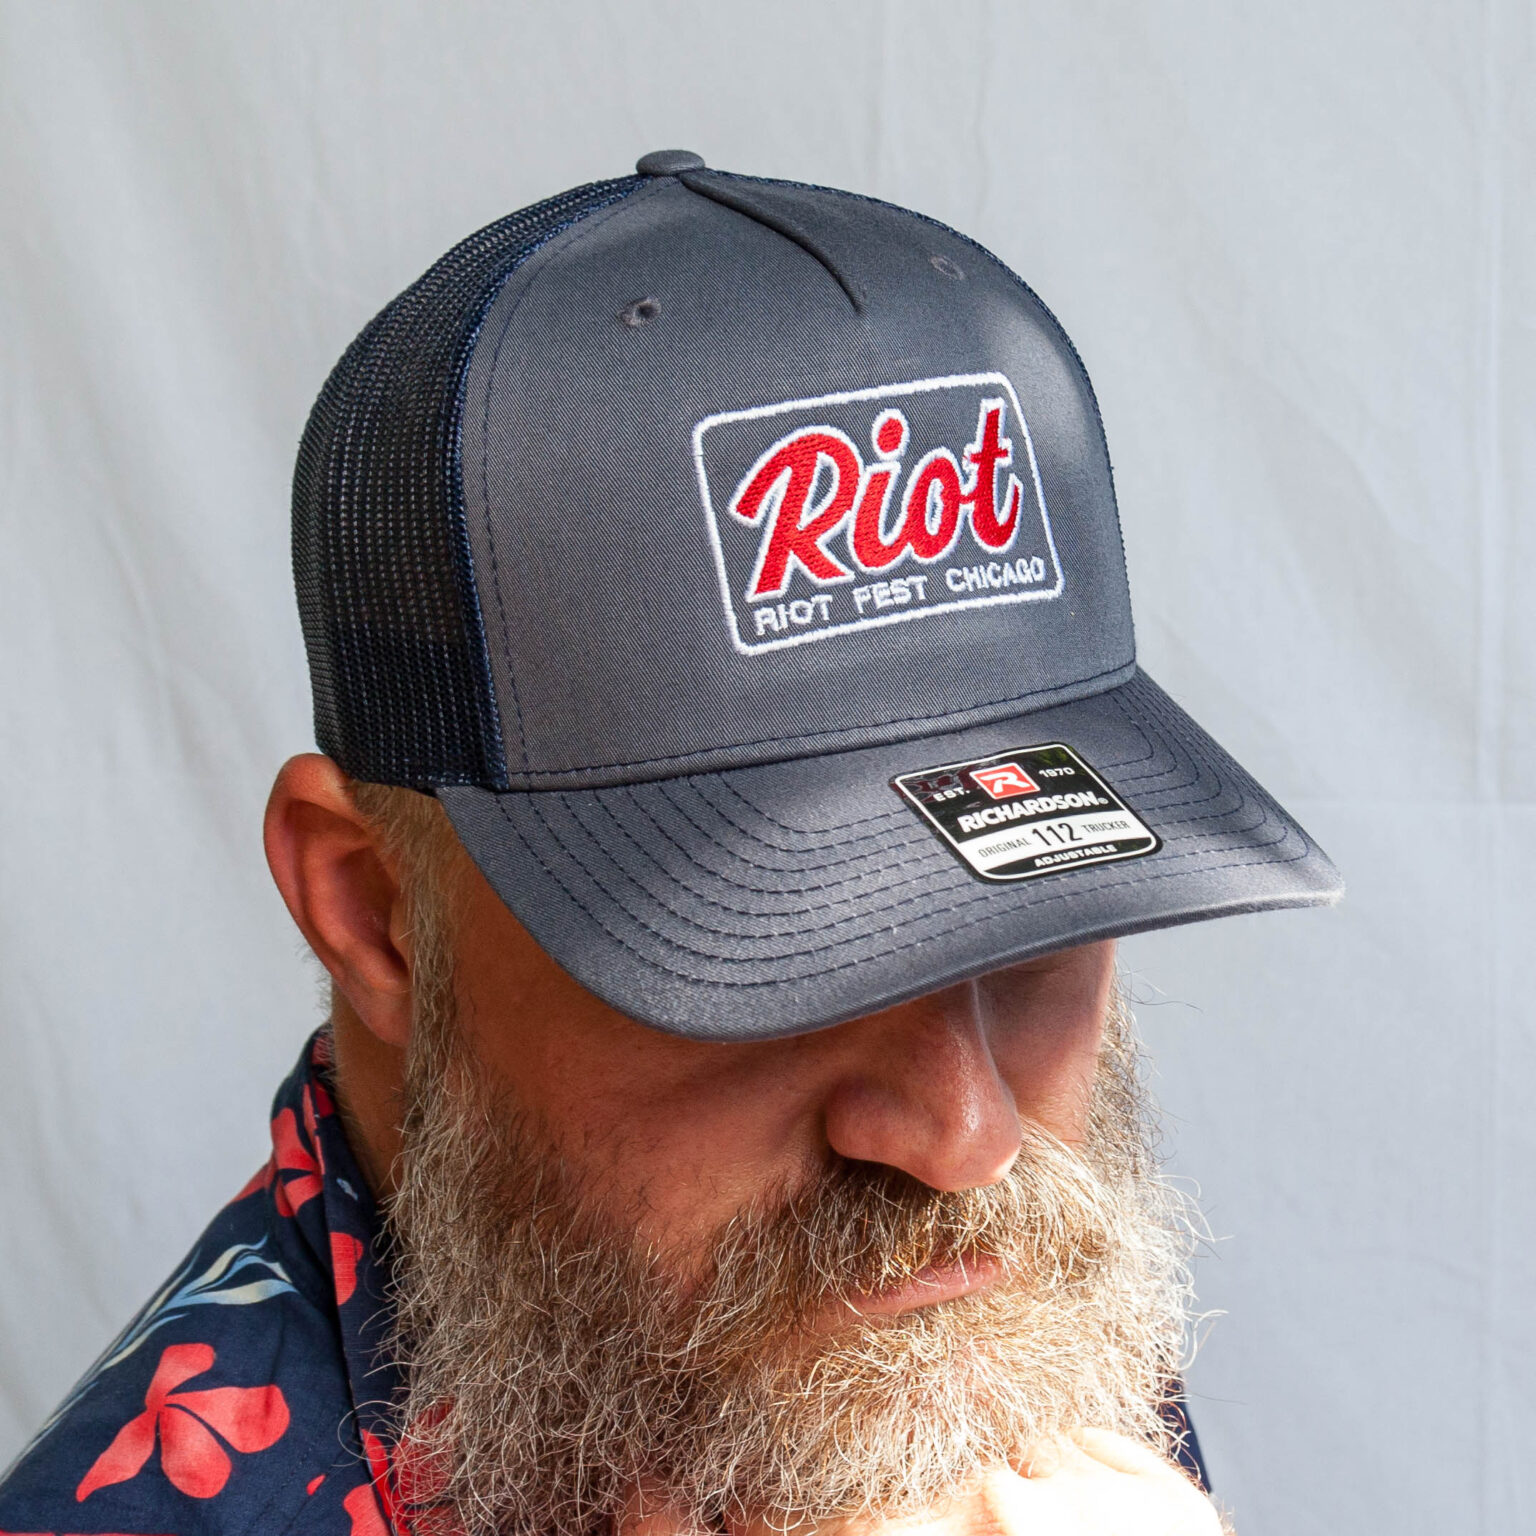 Riot Fest Neon Trucker Hat Detail